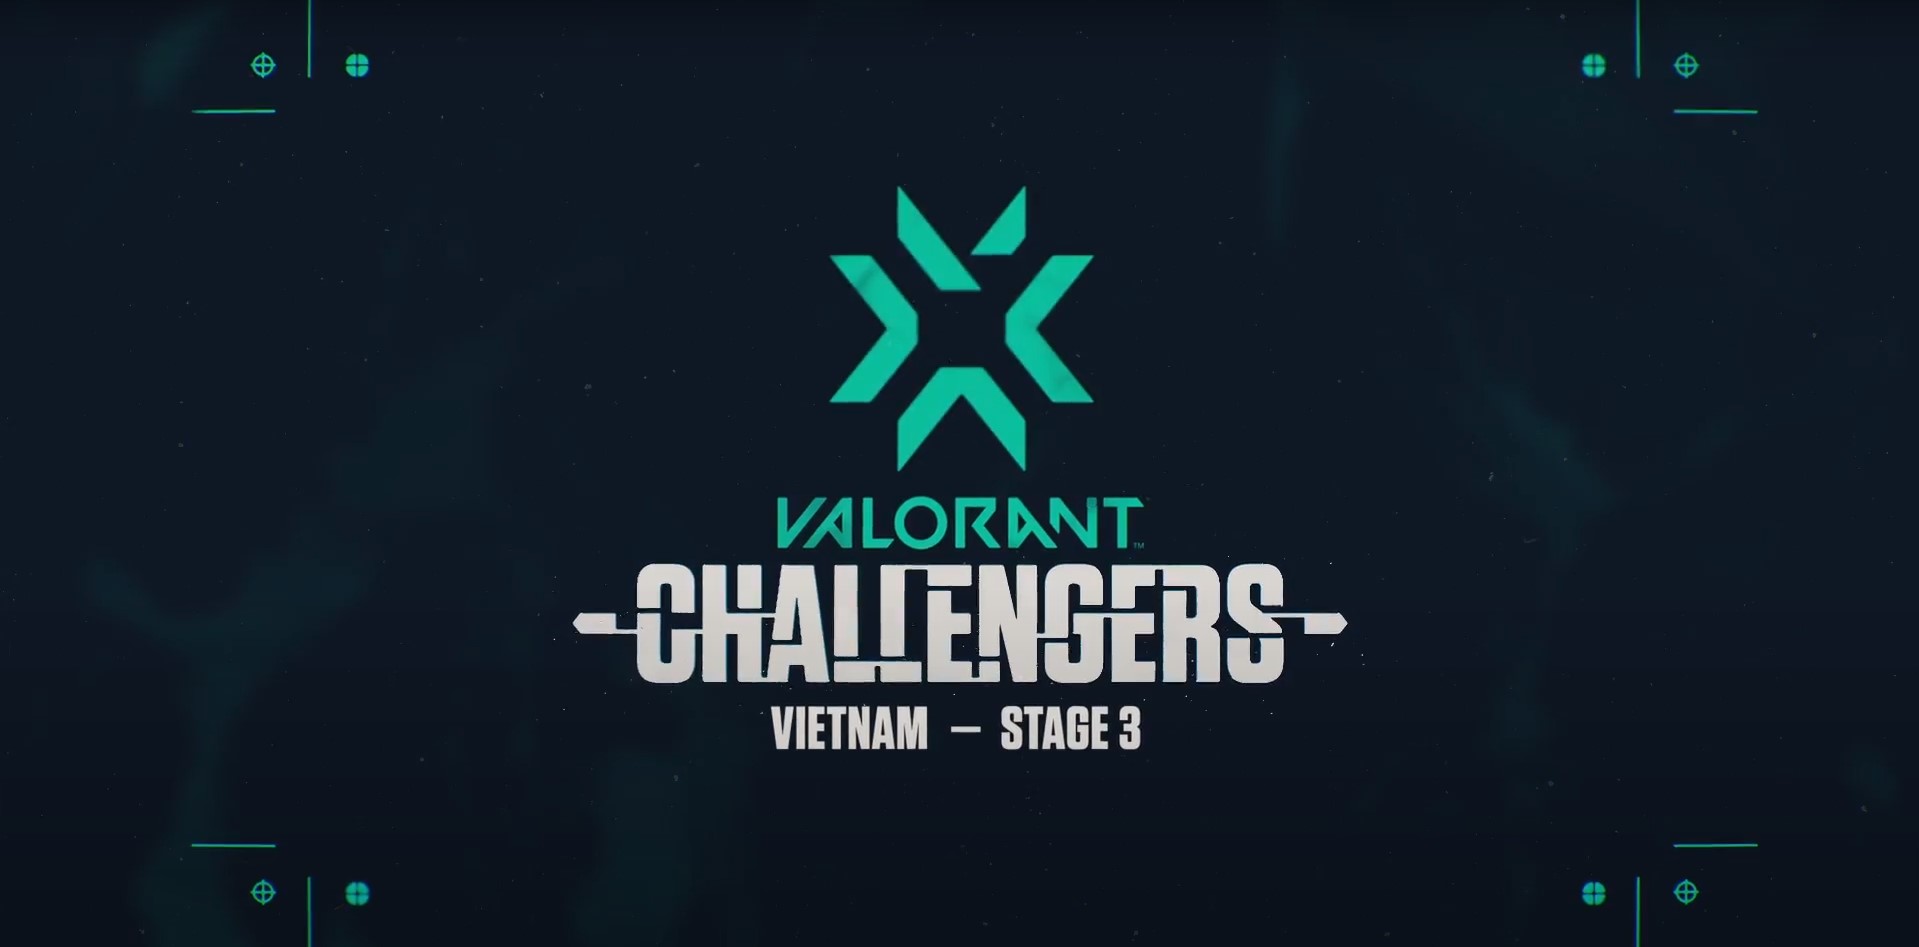 VNG mở đăng ký giải đấu VALORANT Champions Tour: Việt Nam Stage 3 Challengers 1